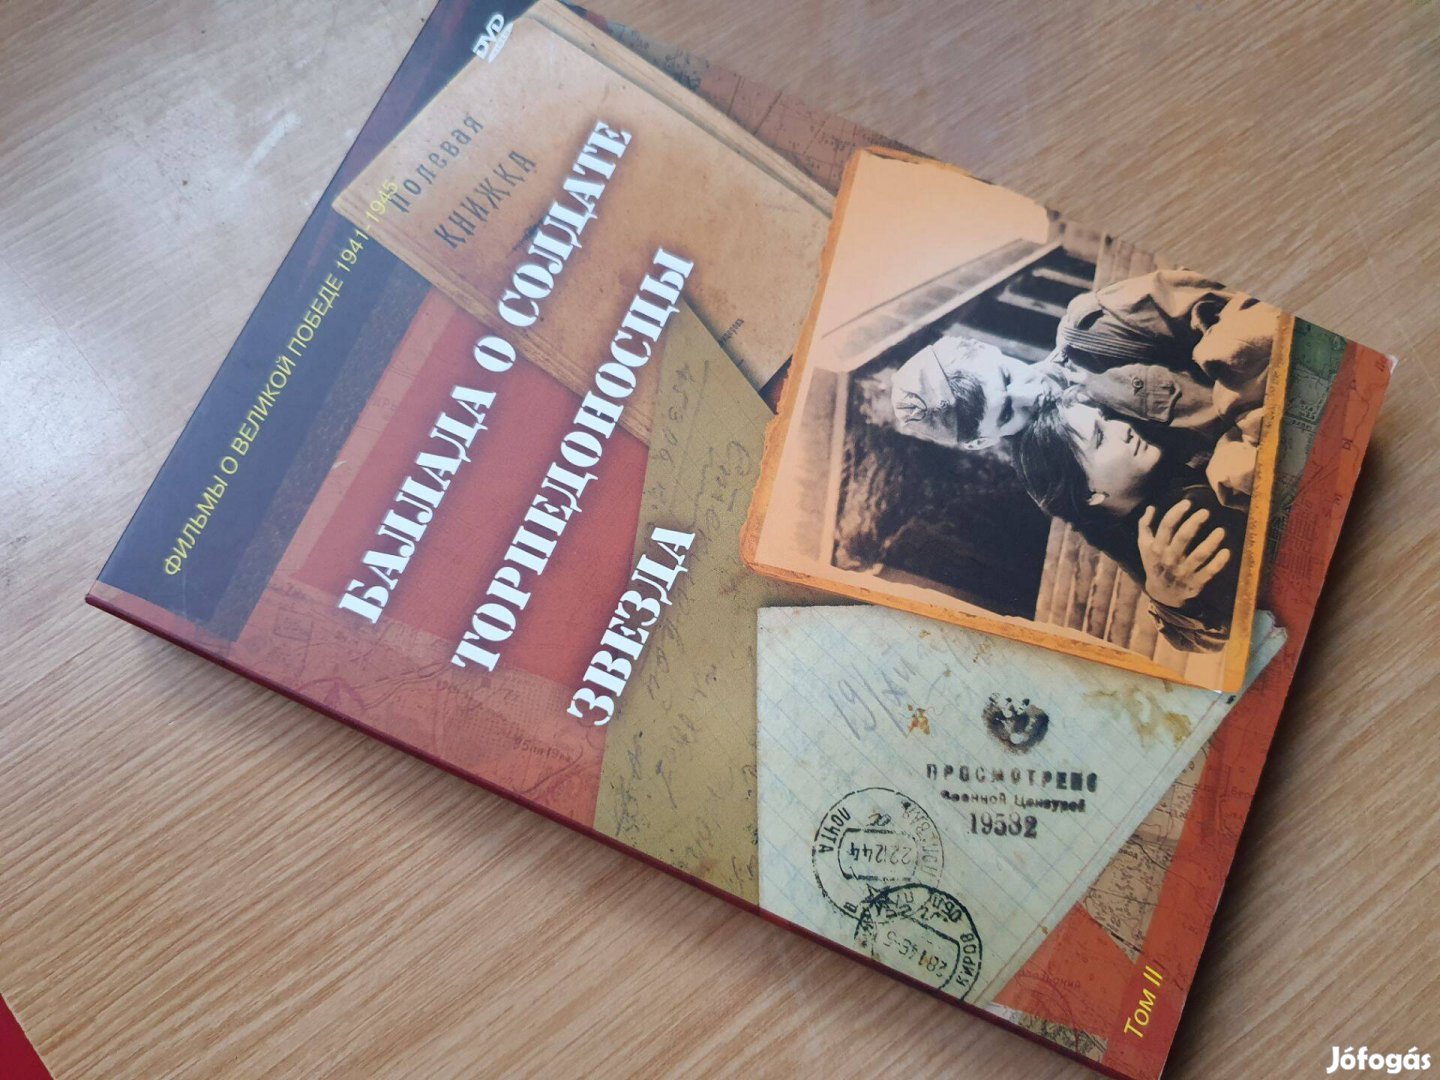 Ballada a katonáról - Csillag - Torpedóbombázók -orosz DVD csomag